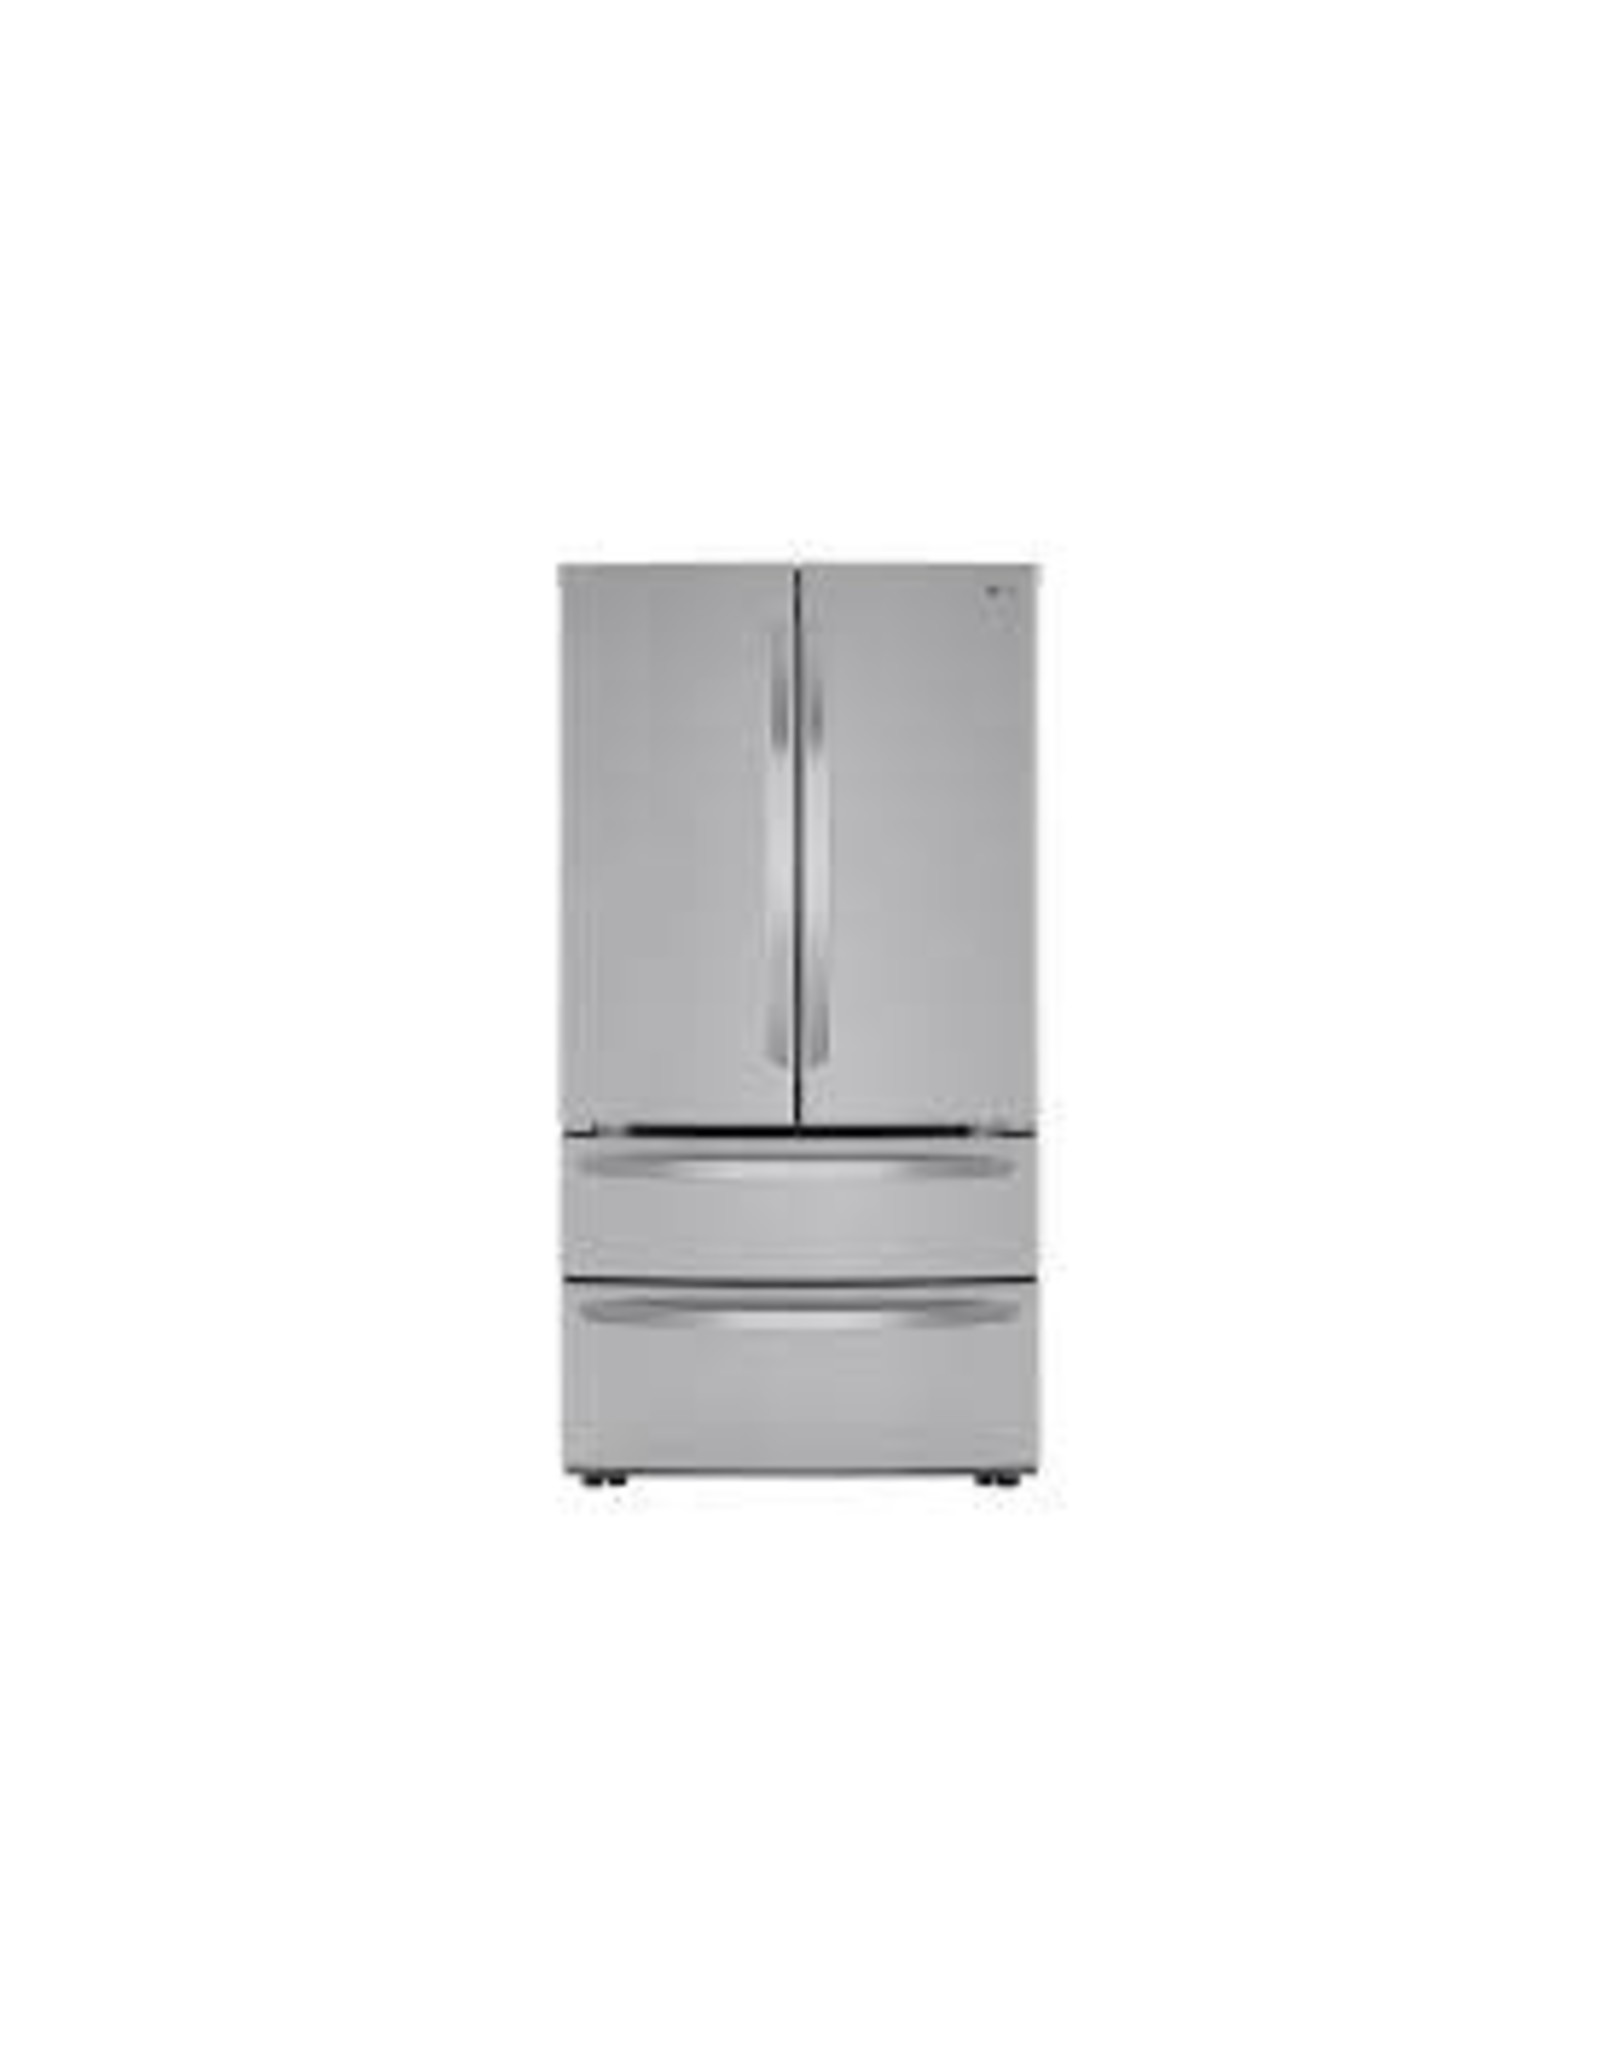 LMWC23626S 23 cu. ft. 4-Door French Door Refrigerator with 2 Freezer Drawers in PrintProof Stainless Steel, Counter Depth